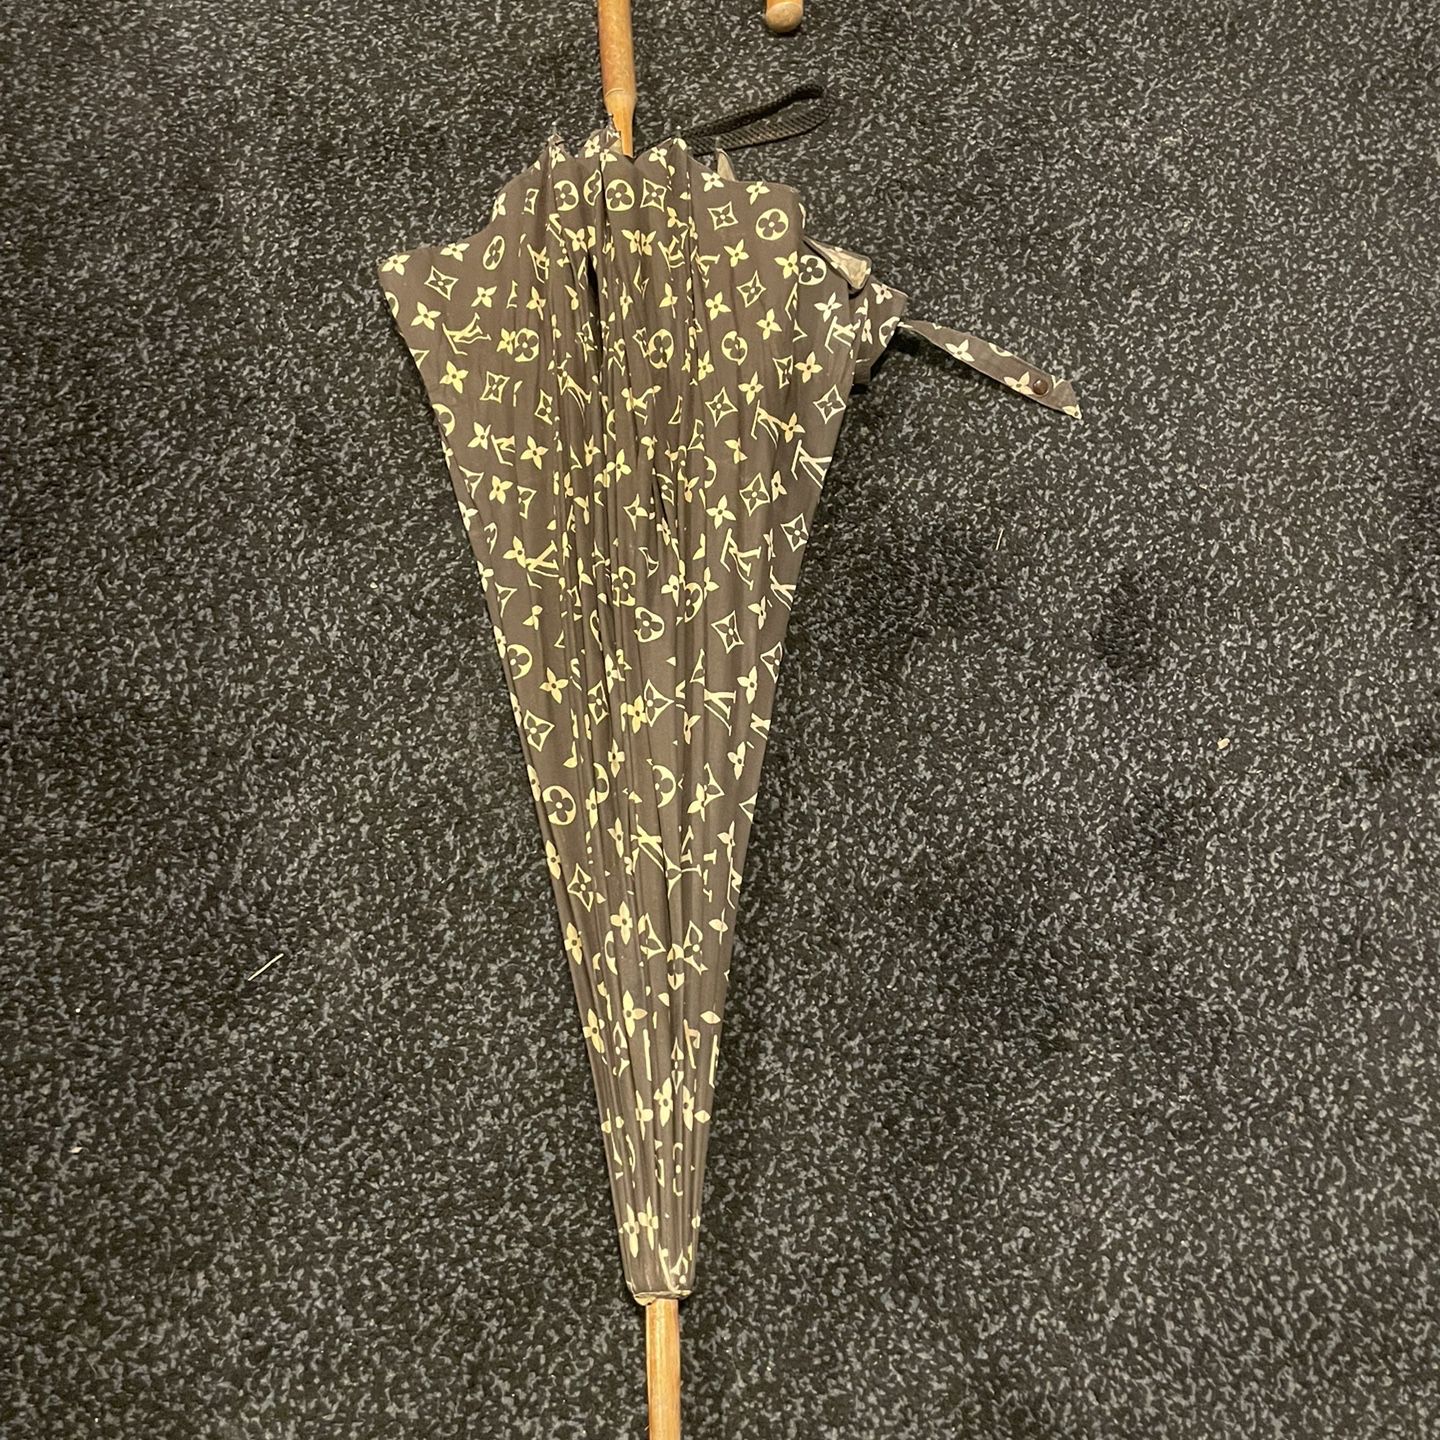 Umbrella (Authentic Pre-Owned)